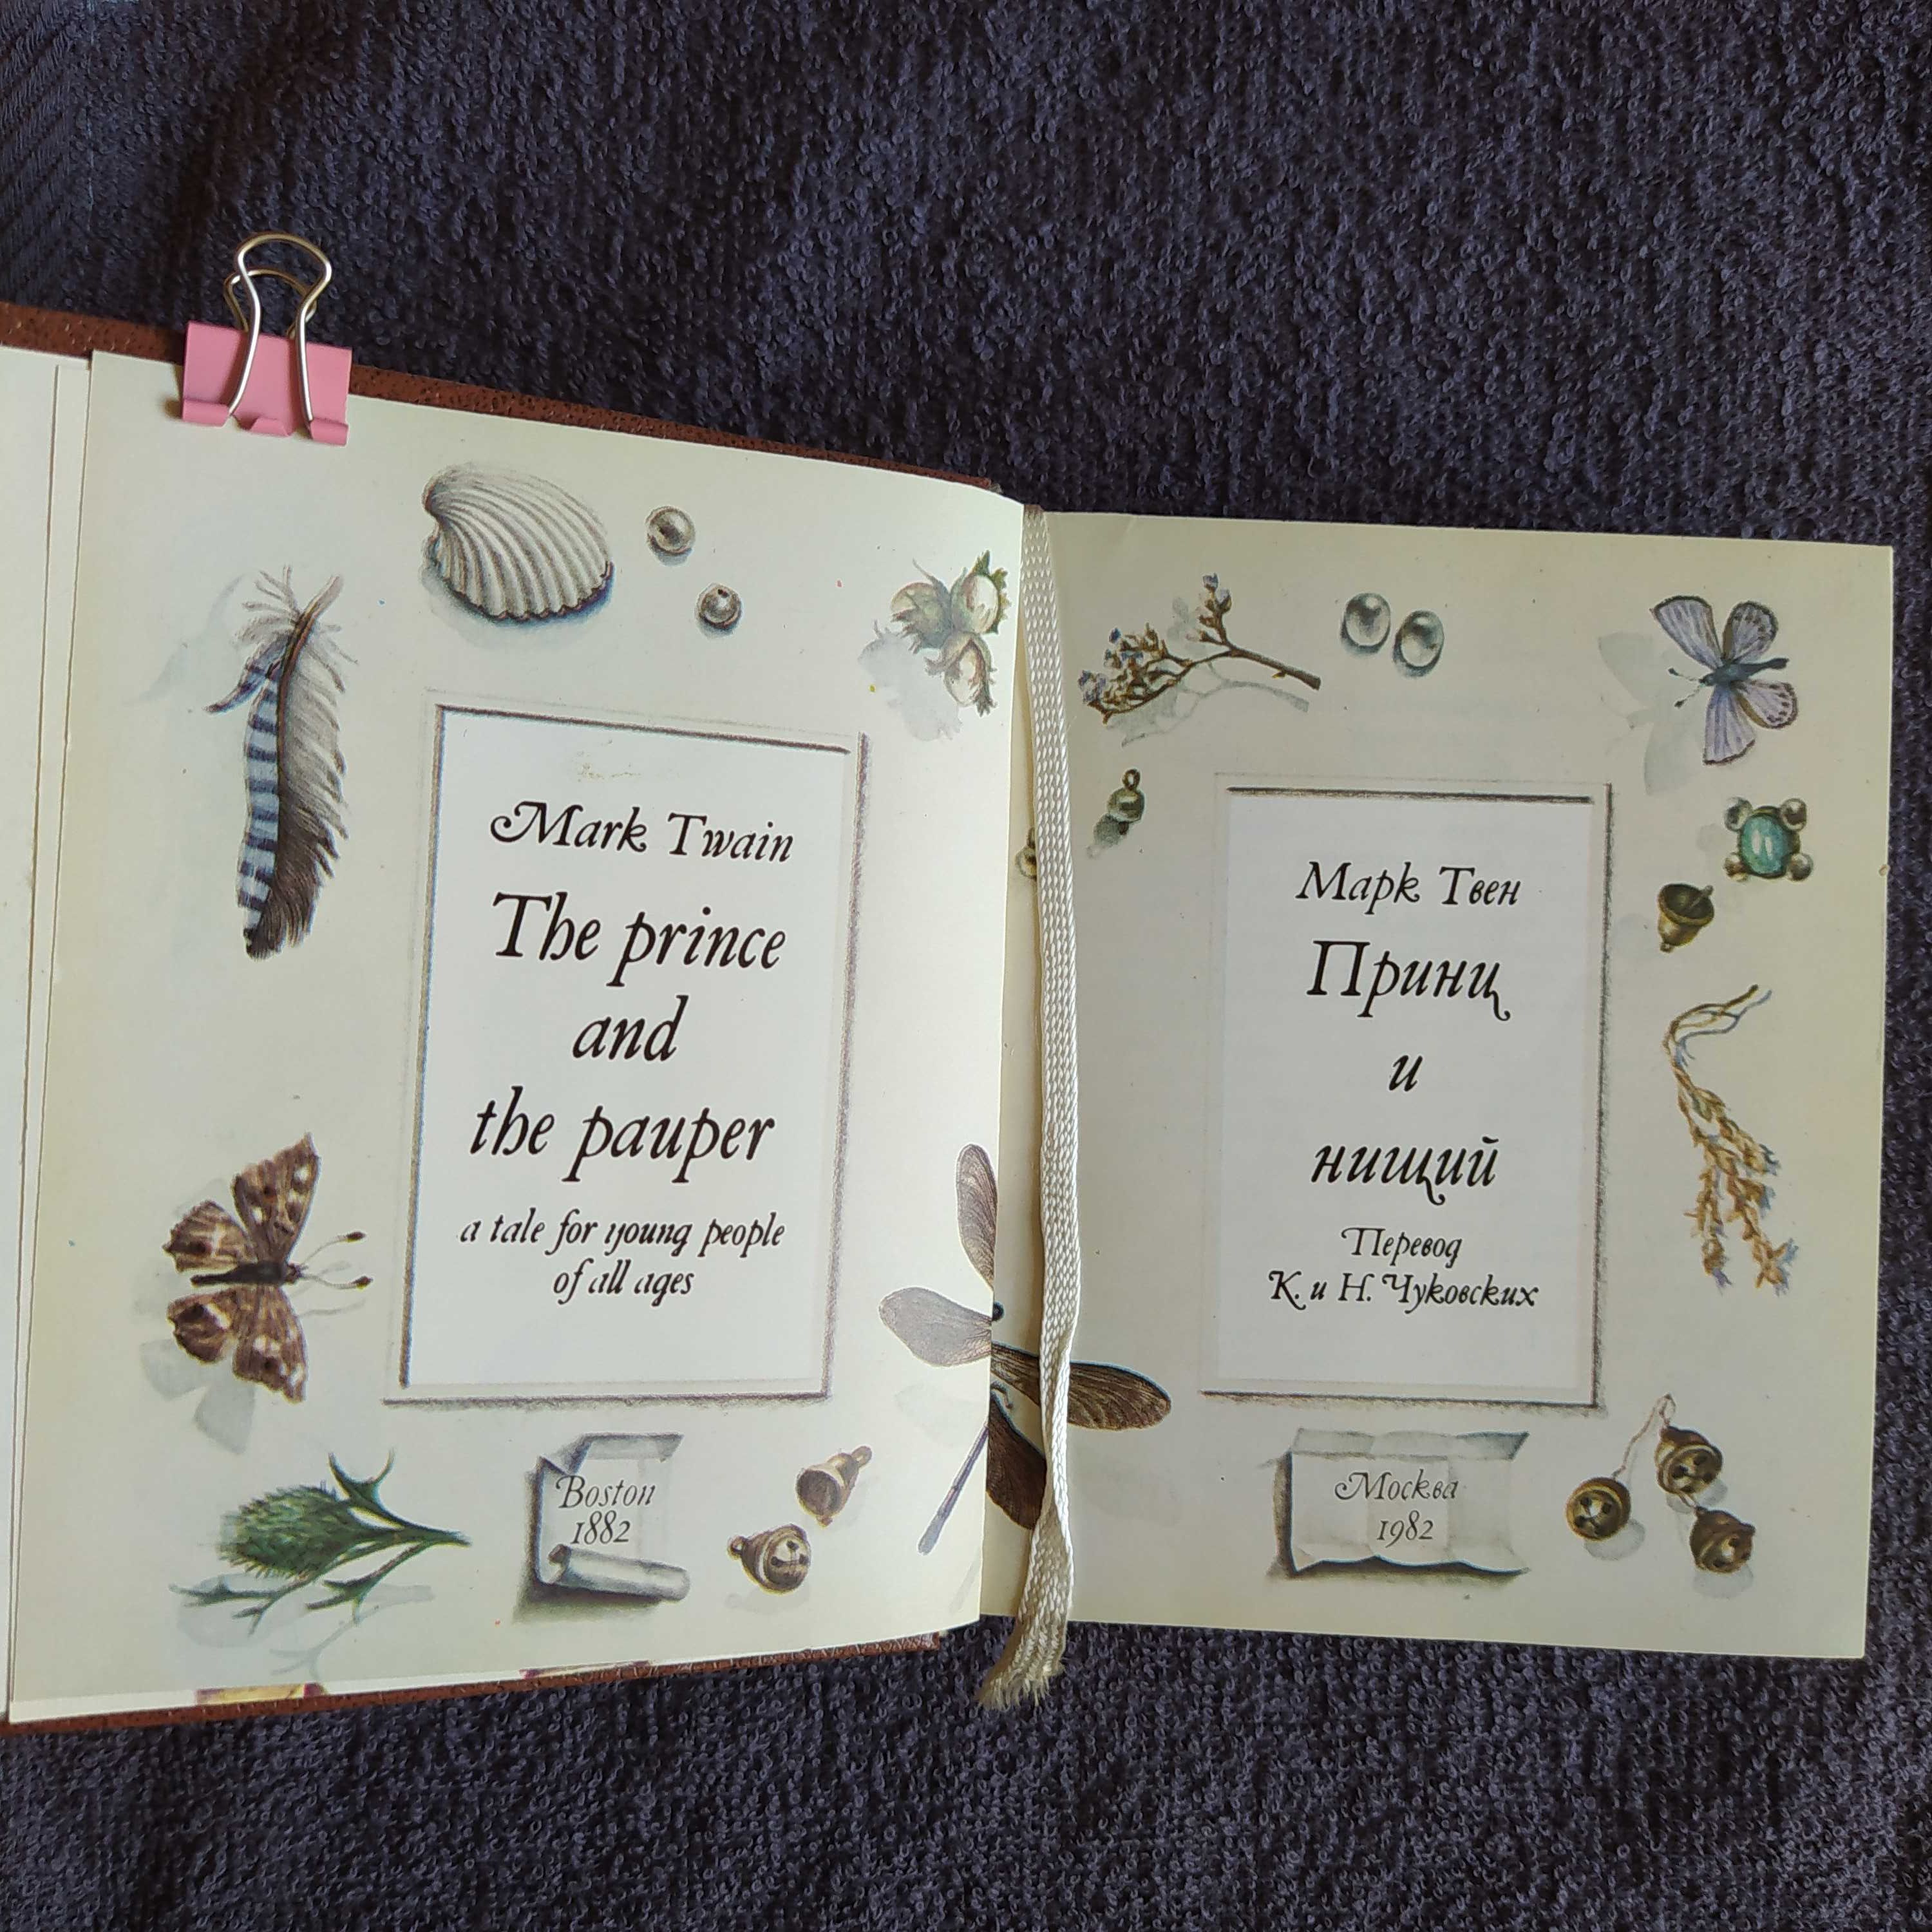 Книга Марк Твен Принц и нищий миниатюра 1982